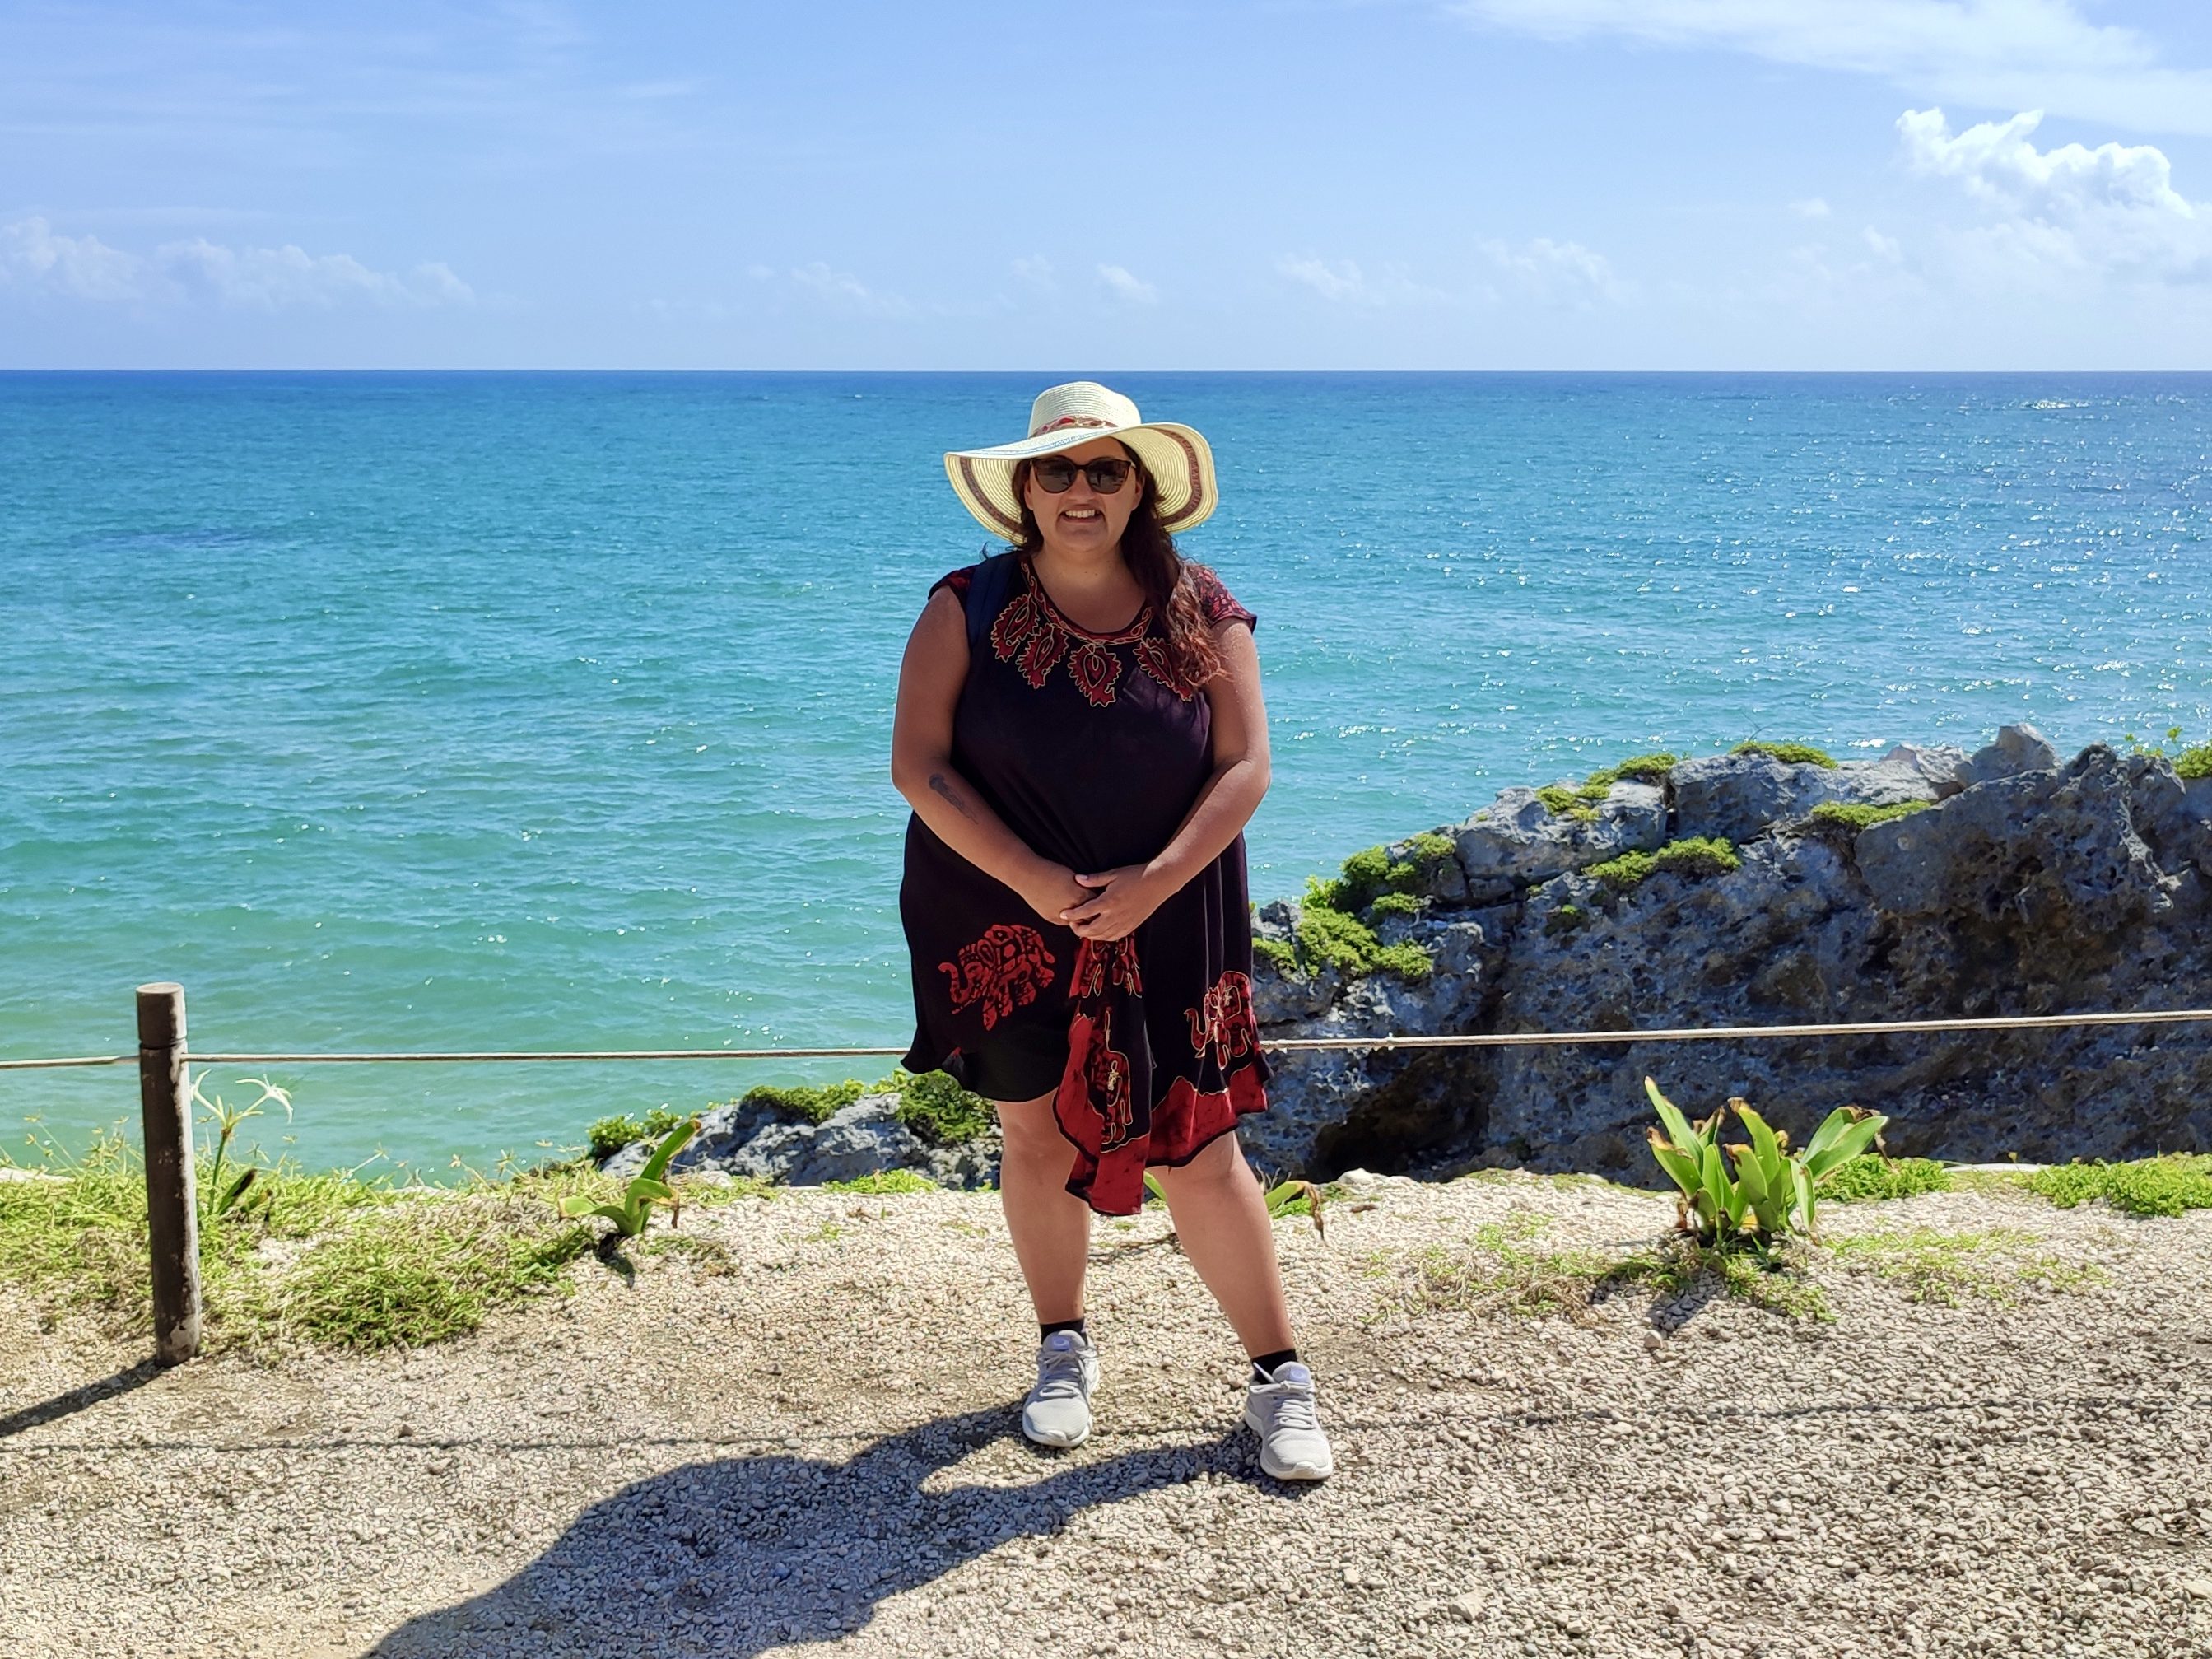 Consejos para viajar a Cancún: lleva ropa liviana.